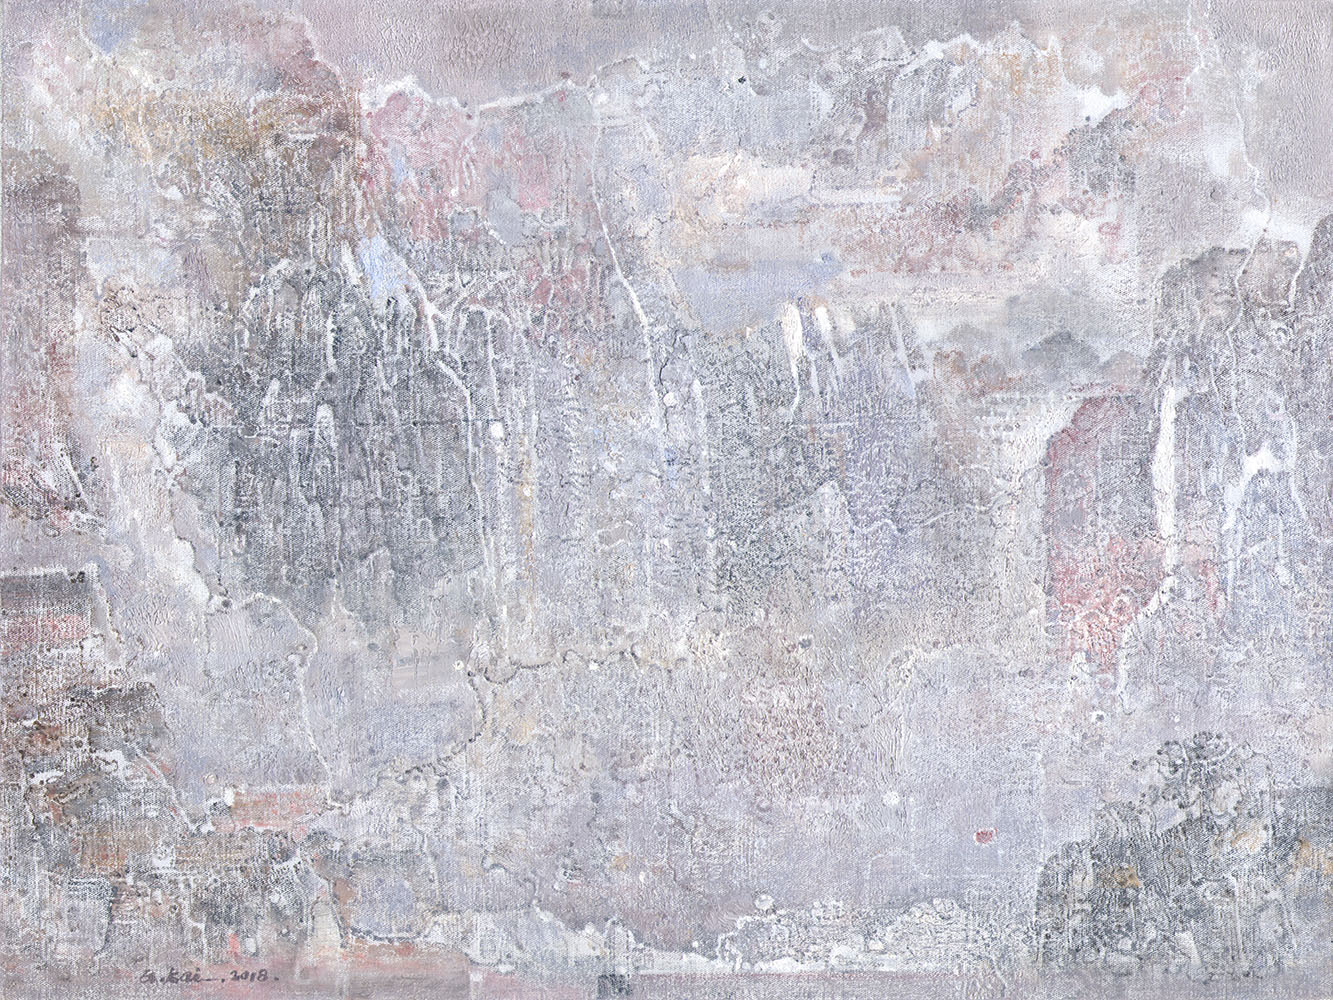 Guo Kai,<i> Empty Mountain Spring No. 1,</i> 2018